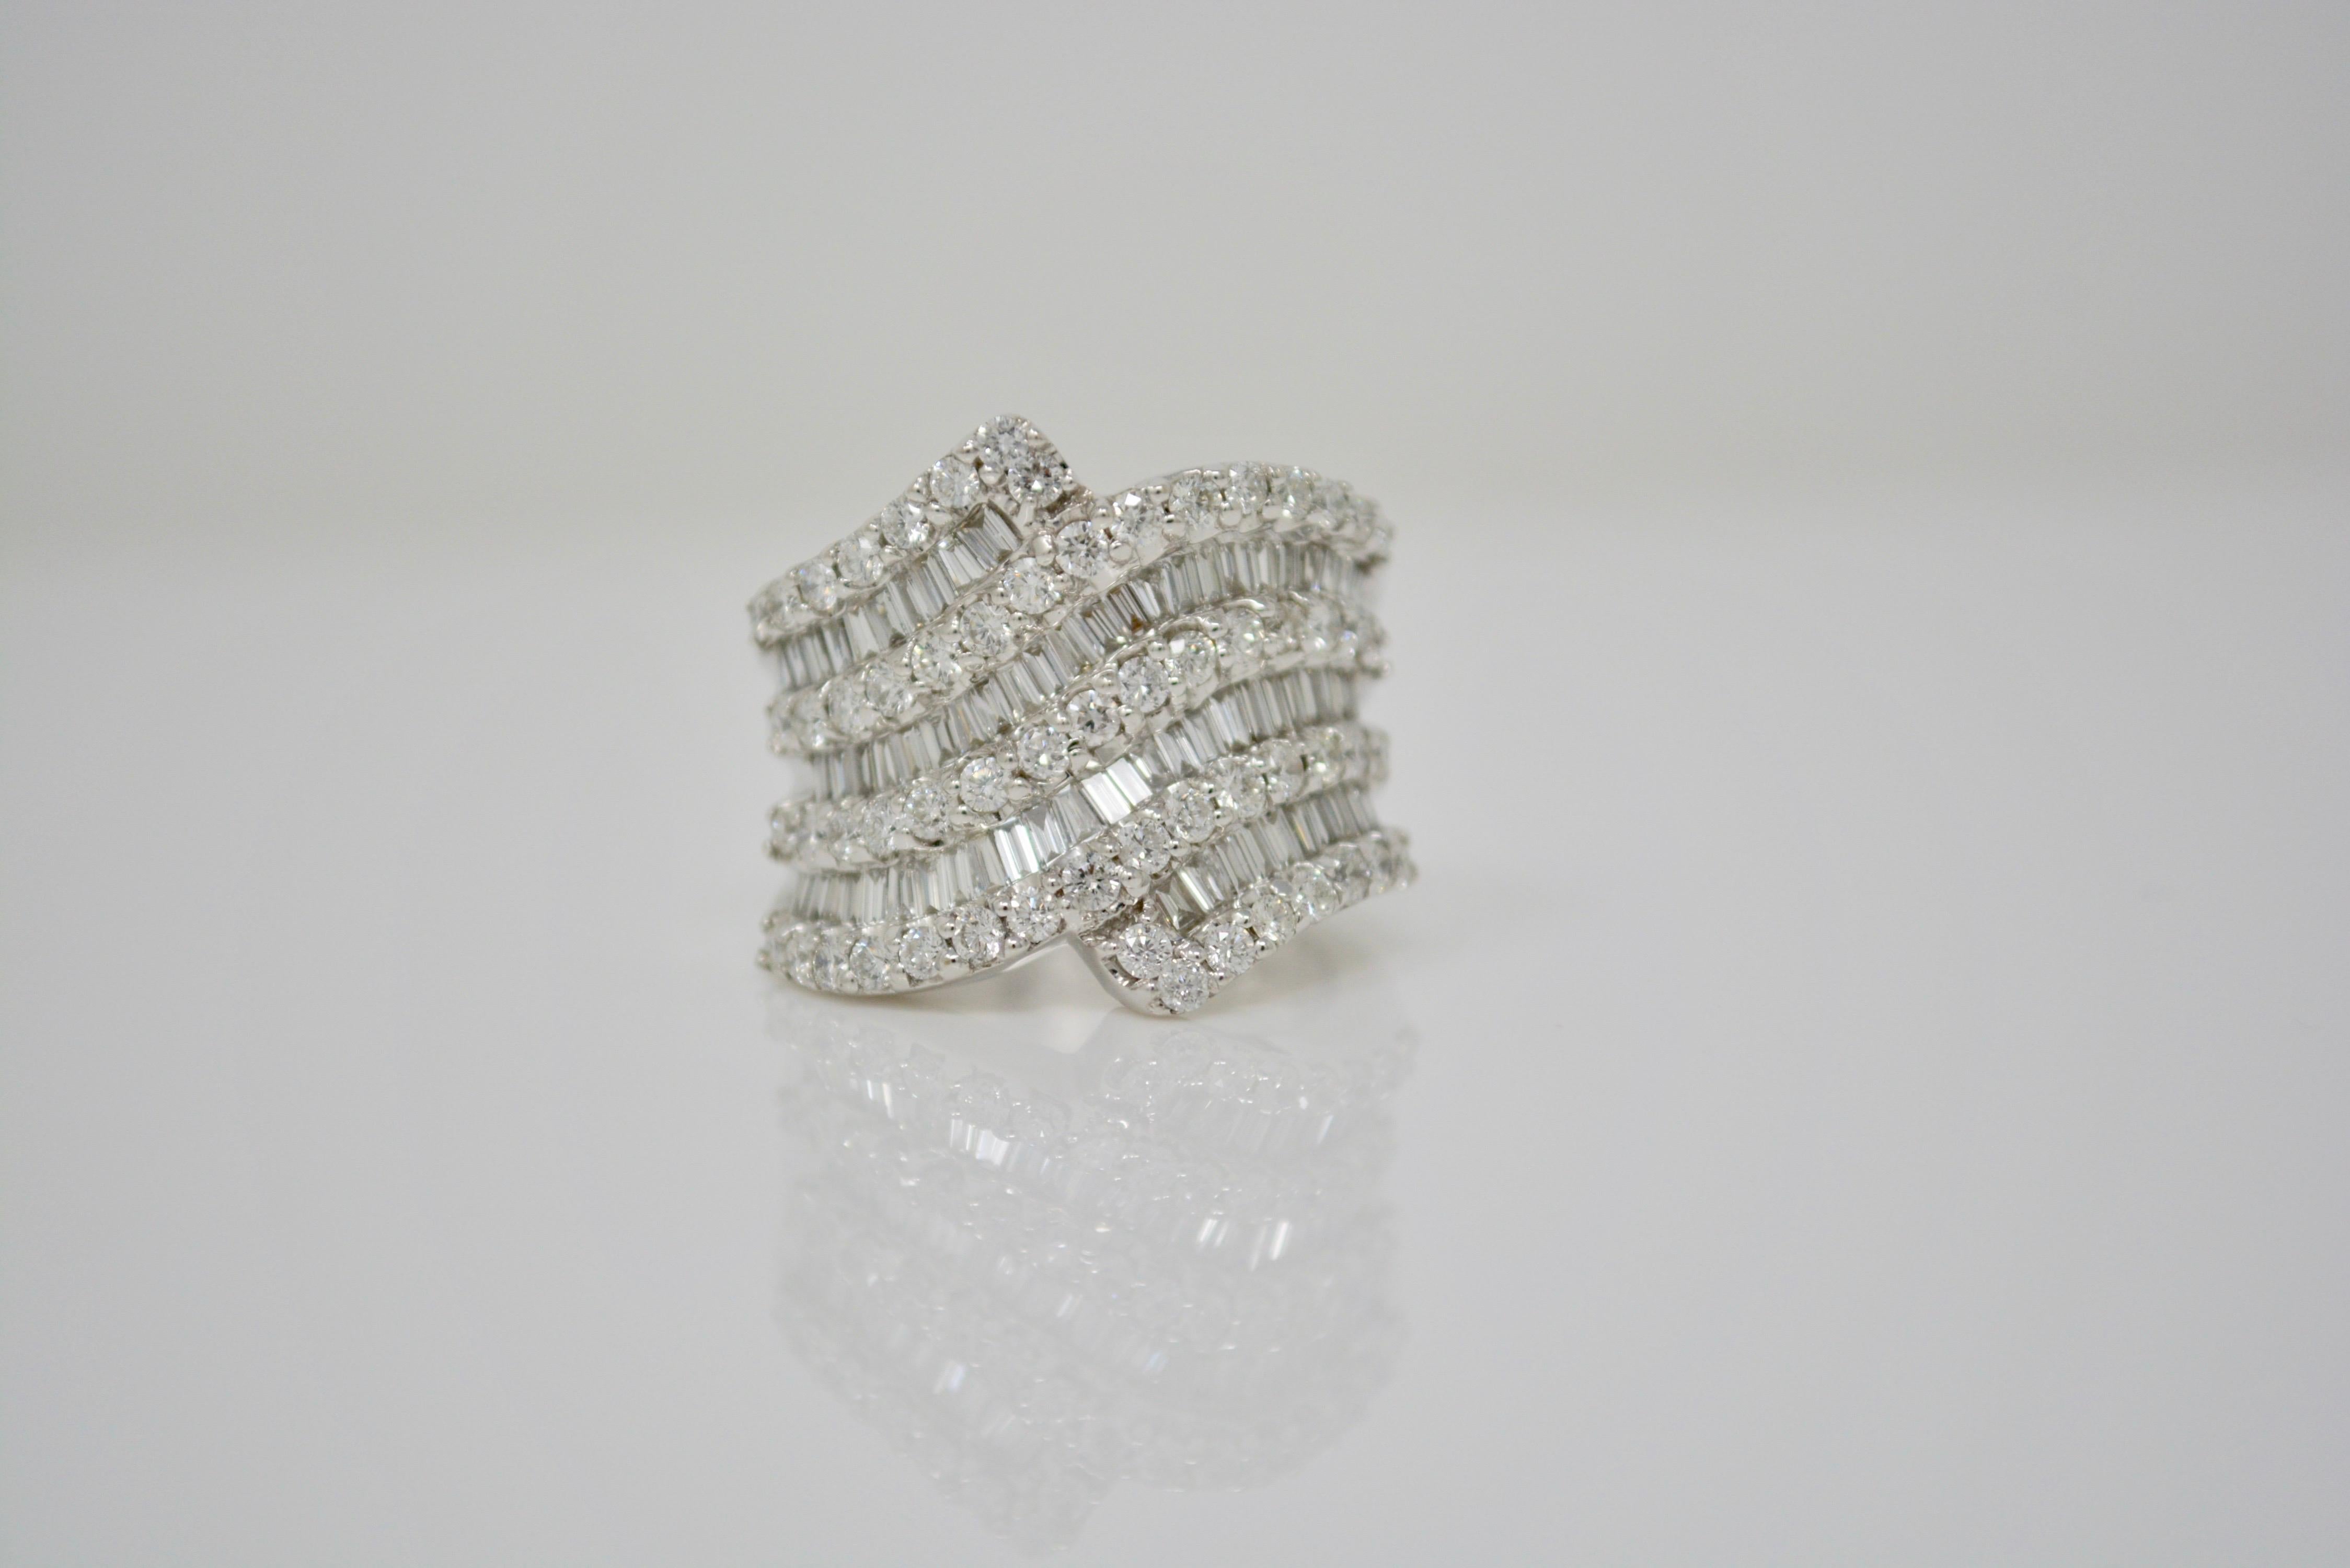 Suchen Sie nach einem einzigartigen Diamantring mit großer Ausstrahlung? Suchen Sie nicht weiter! Diese atemberaubende 18 K Weißgold Ring verfügt über ein Gesamtgewicht von 2,70 Karat weißen runden Brillanten und Baguette-Diamanten mit G-H Farbe und